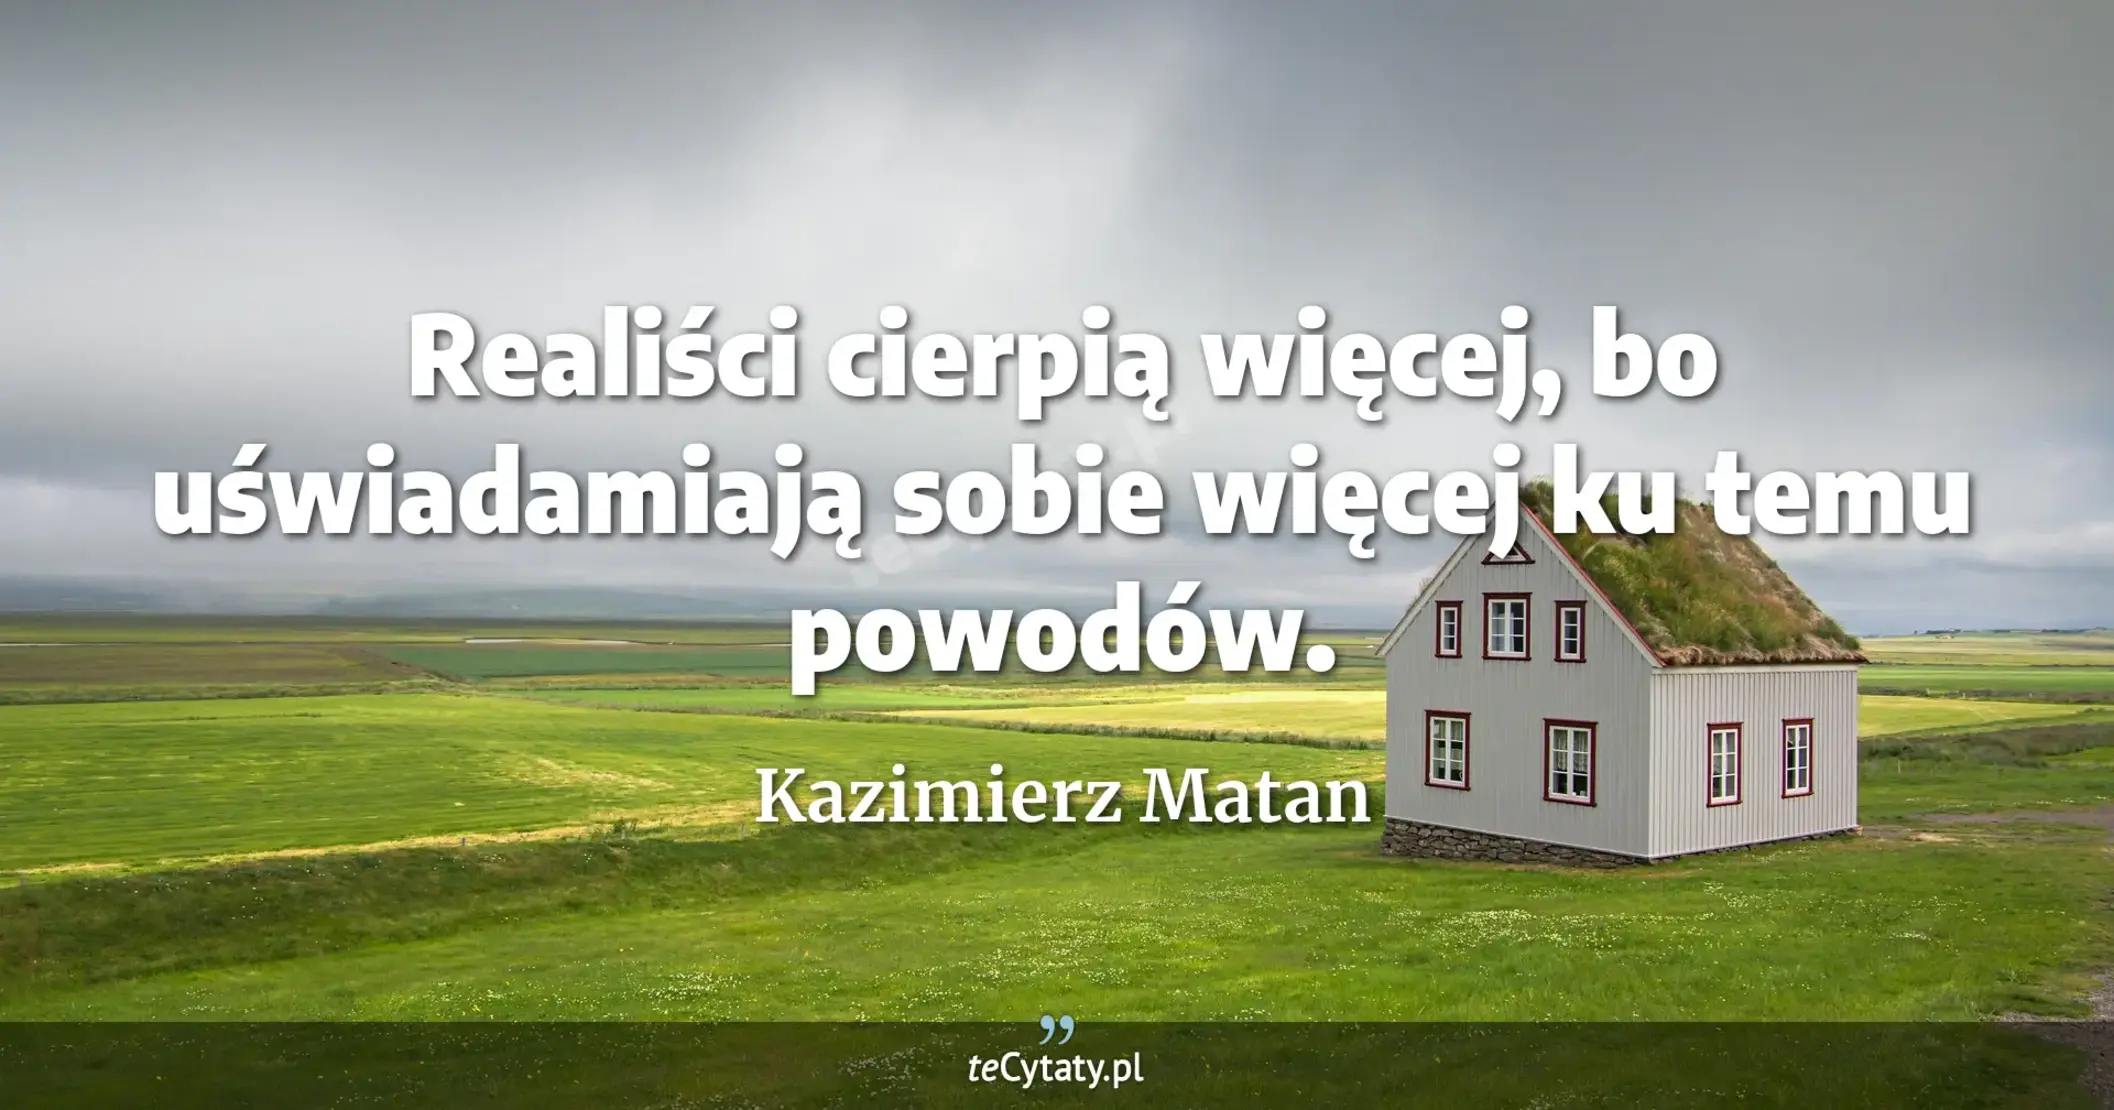 Realiści cierpią więcej, bo uświadamiają sobie więcej ku temu powodów. - Kazimierz Matan